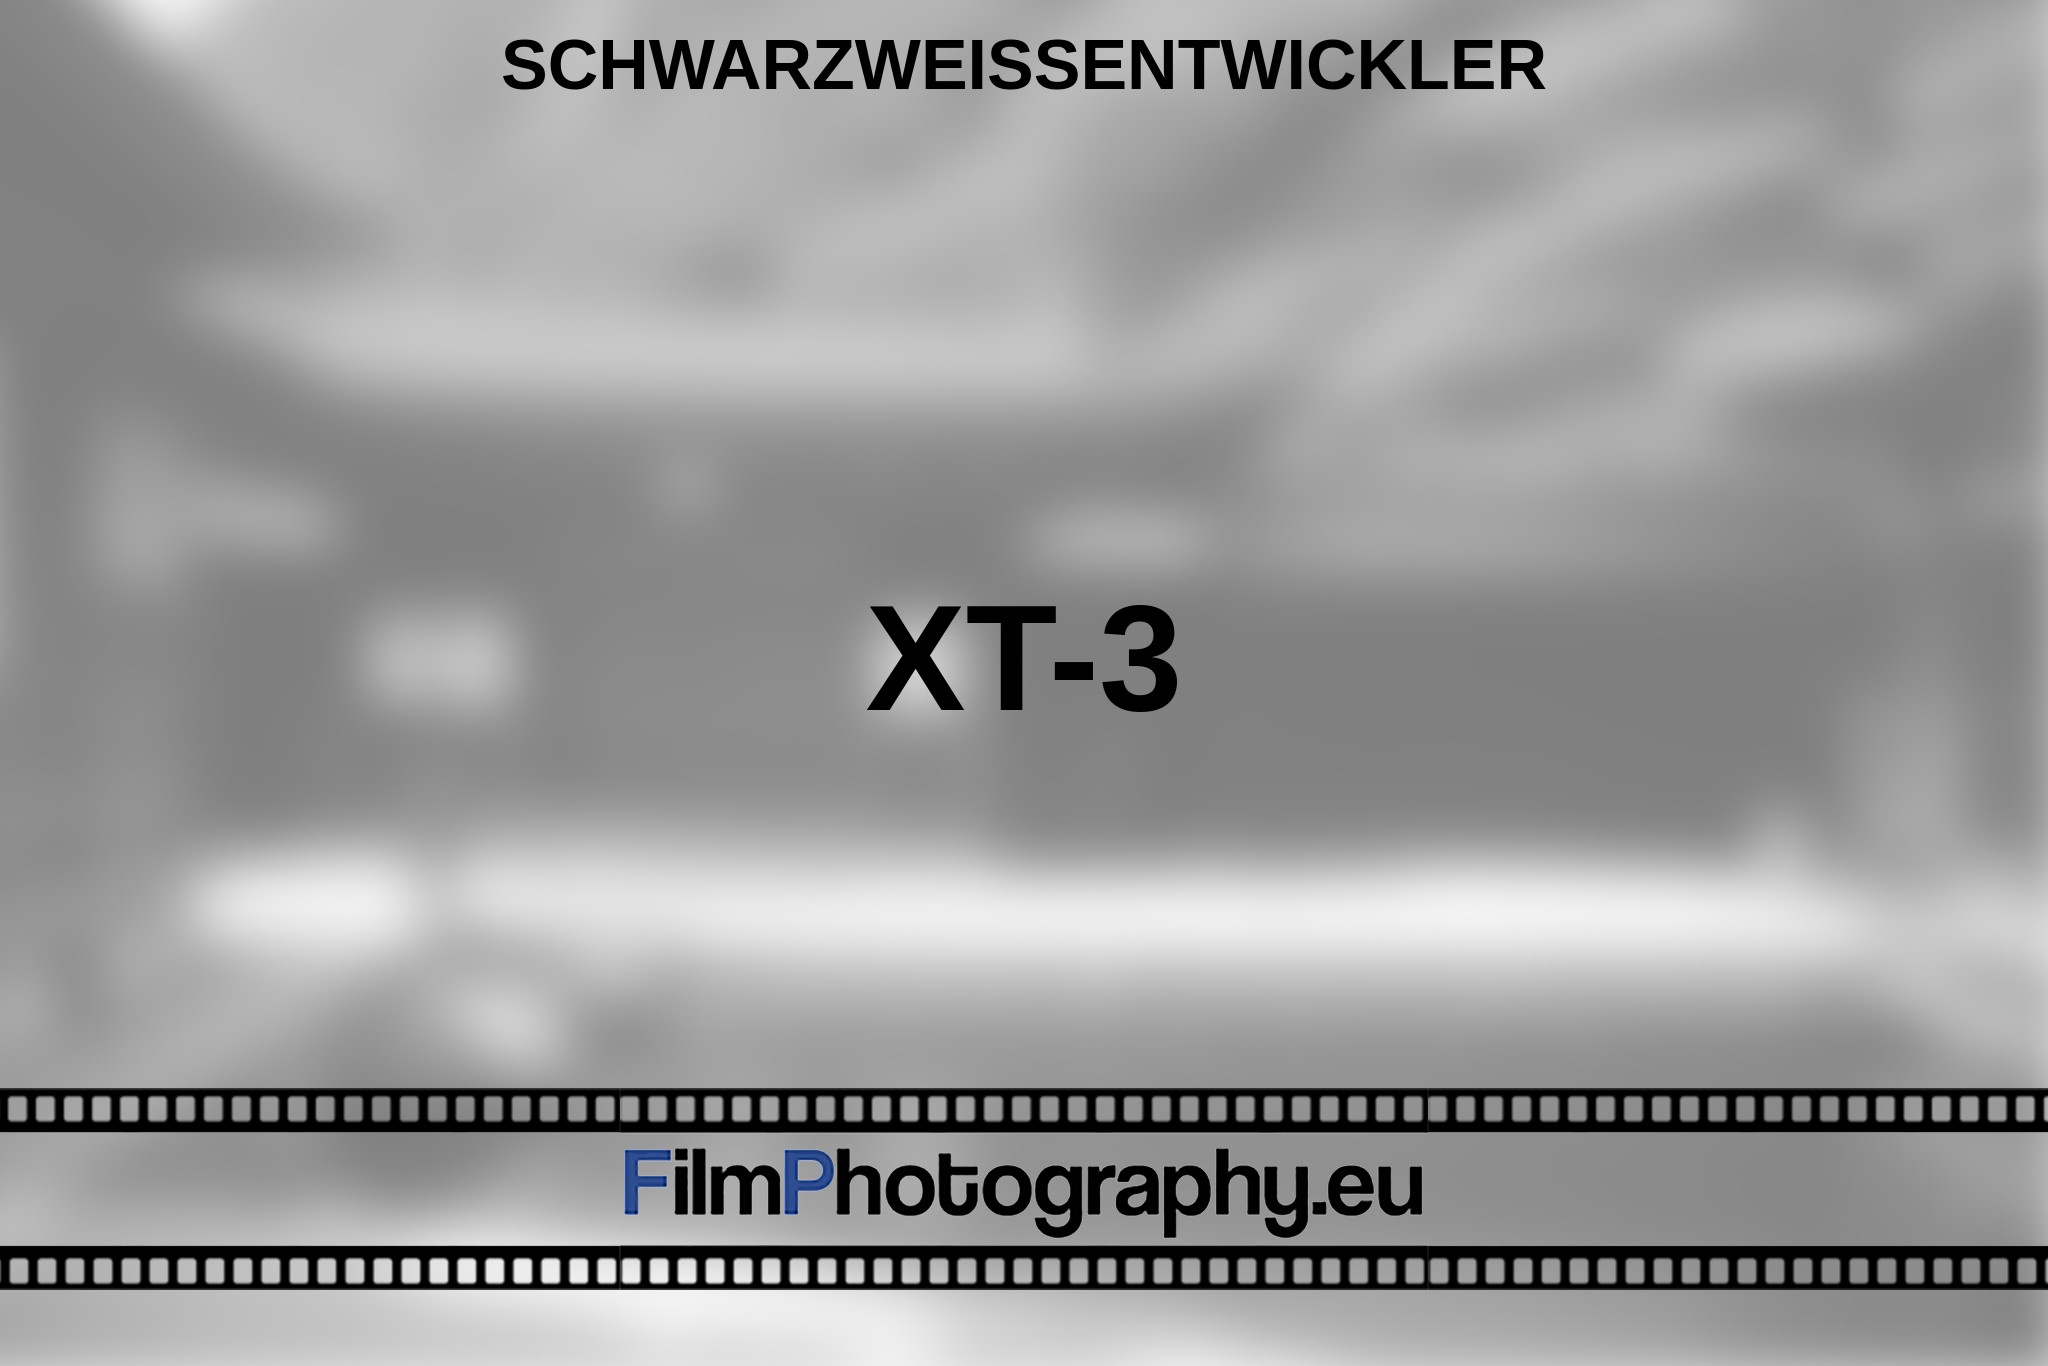 xt-3-schwarzweißentwickler-bnv.jpg